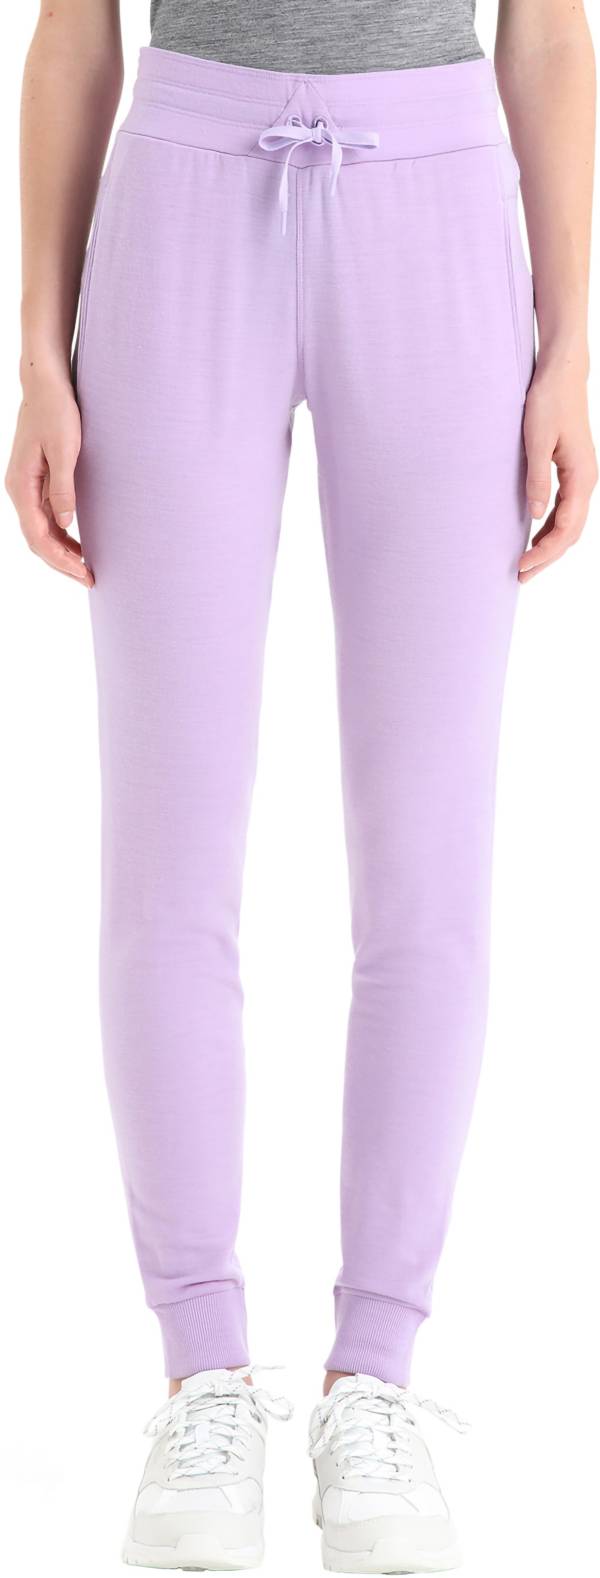 Icebreaker Women's Merino Crush Pants product image